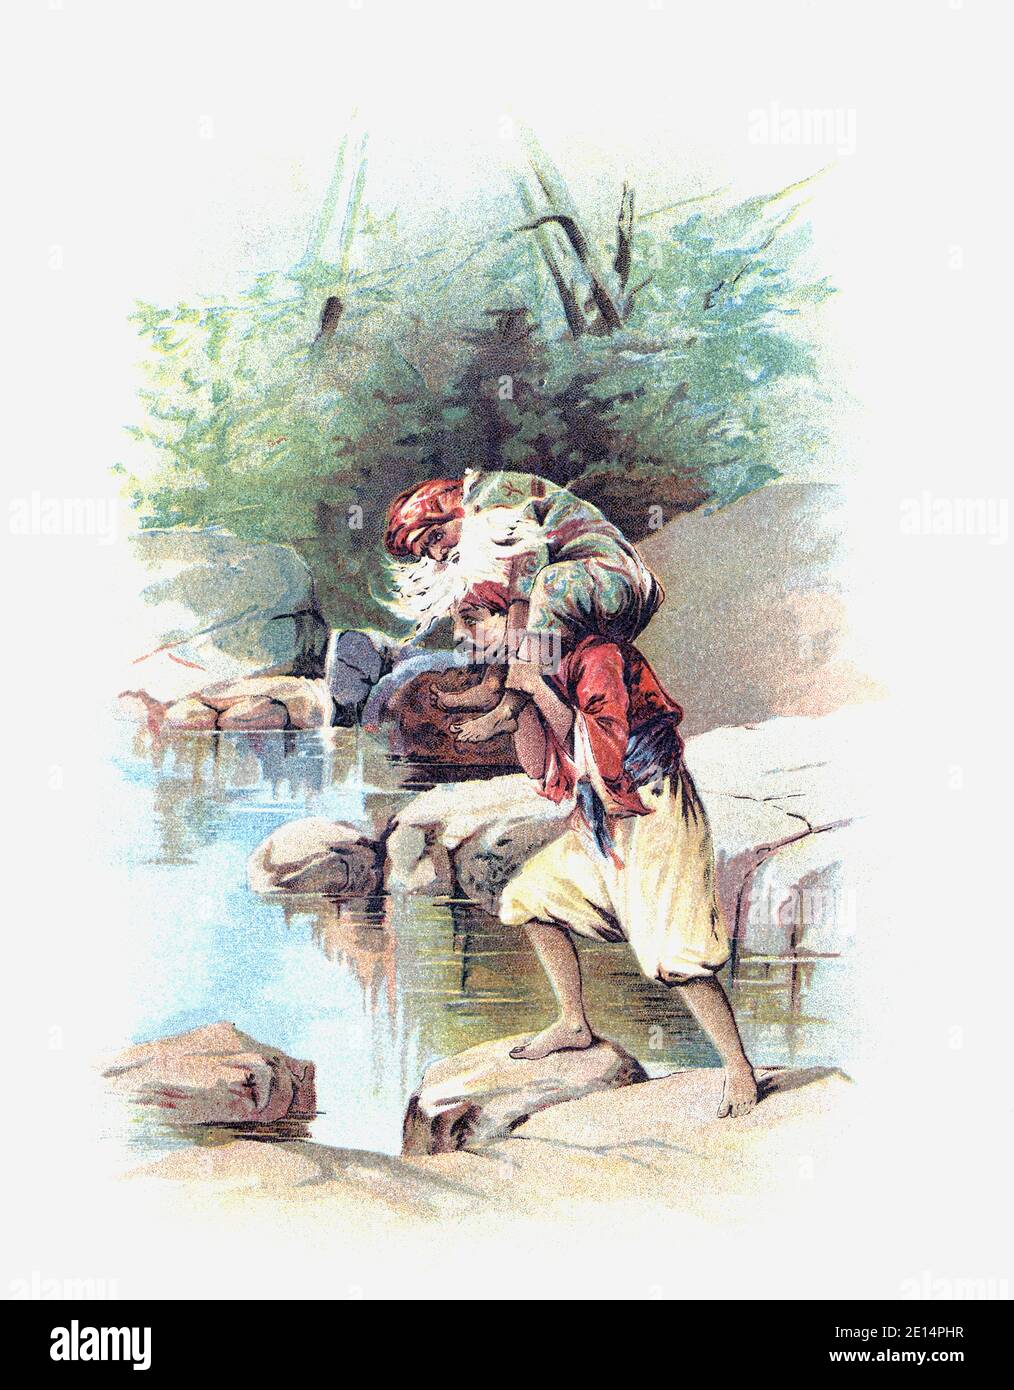 Sinbad, der Seemann, trägt den alten Mann des Meeres auf seinen Schultern. Nach einer Illustration von Francis Brundage in einer Ausgabe der Arabian Nights Entertainments von 1898. Stockfoto